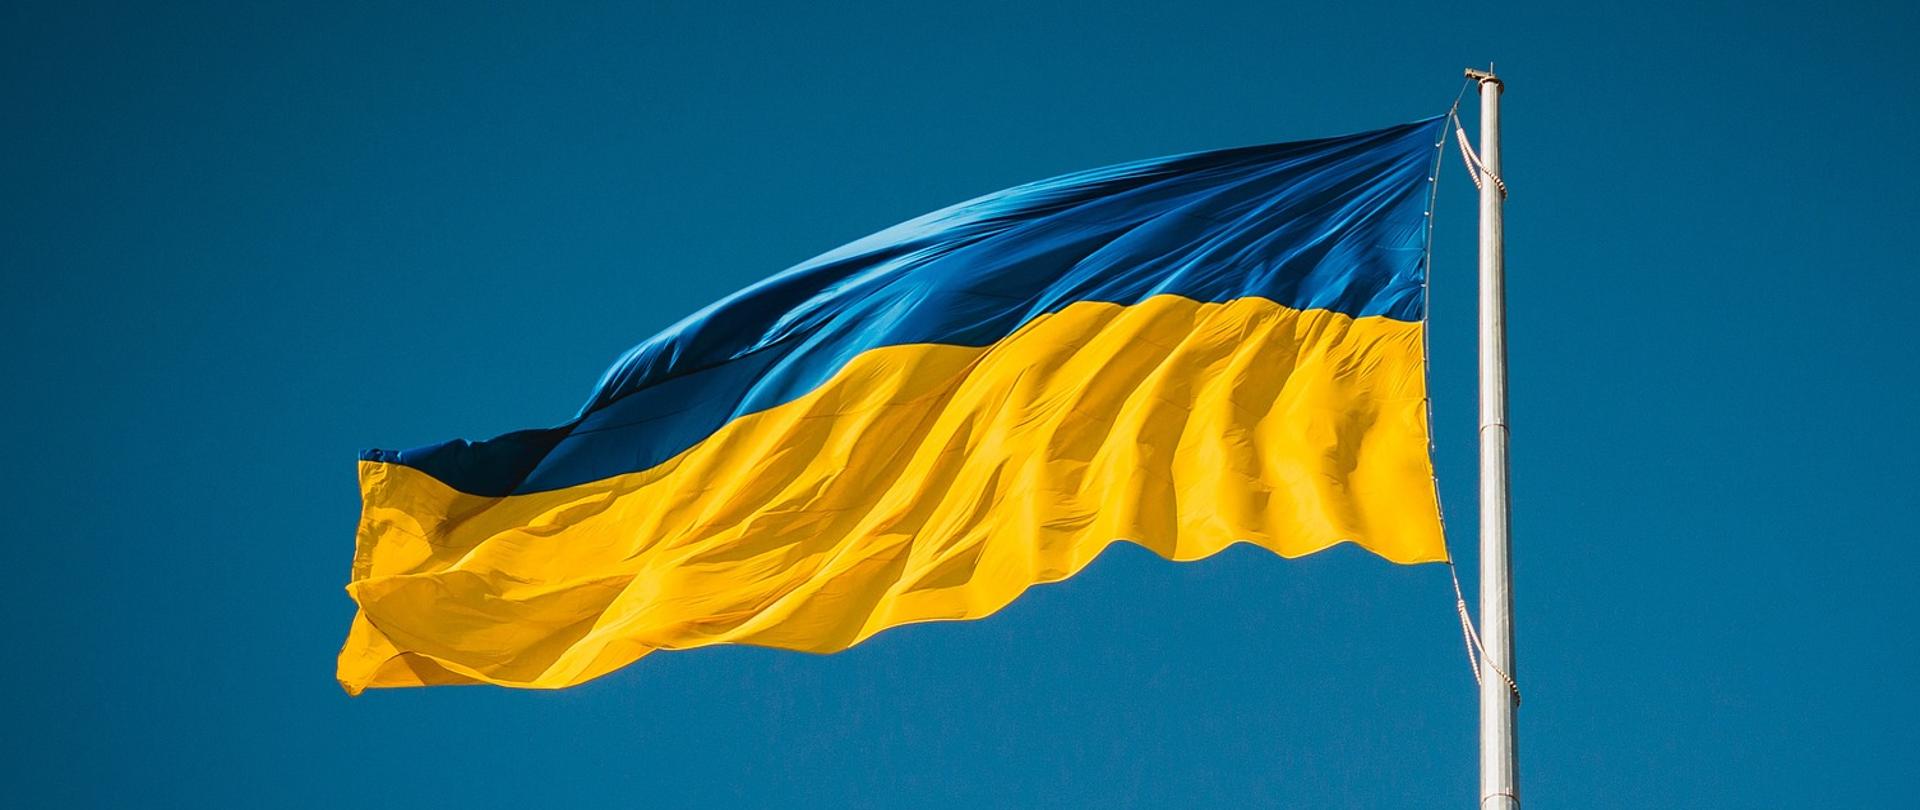 Przyczepiona do masztu niebiesko-żółta flaga Ukrainy powiewająca na wietrze